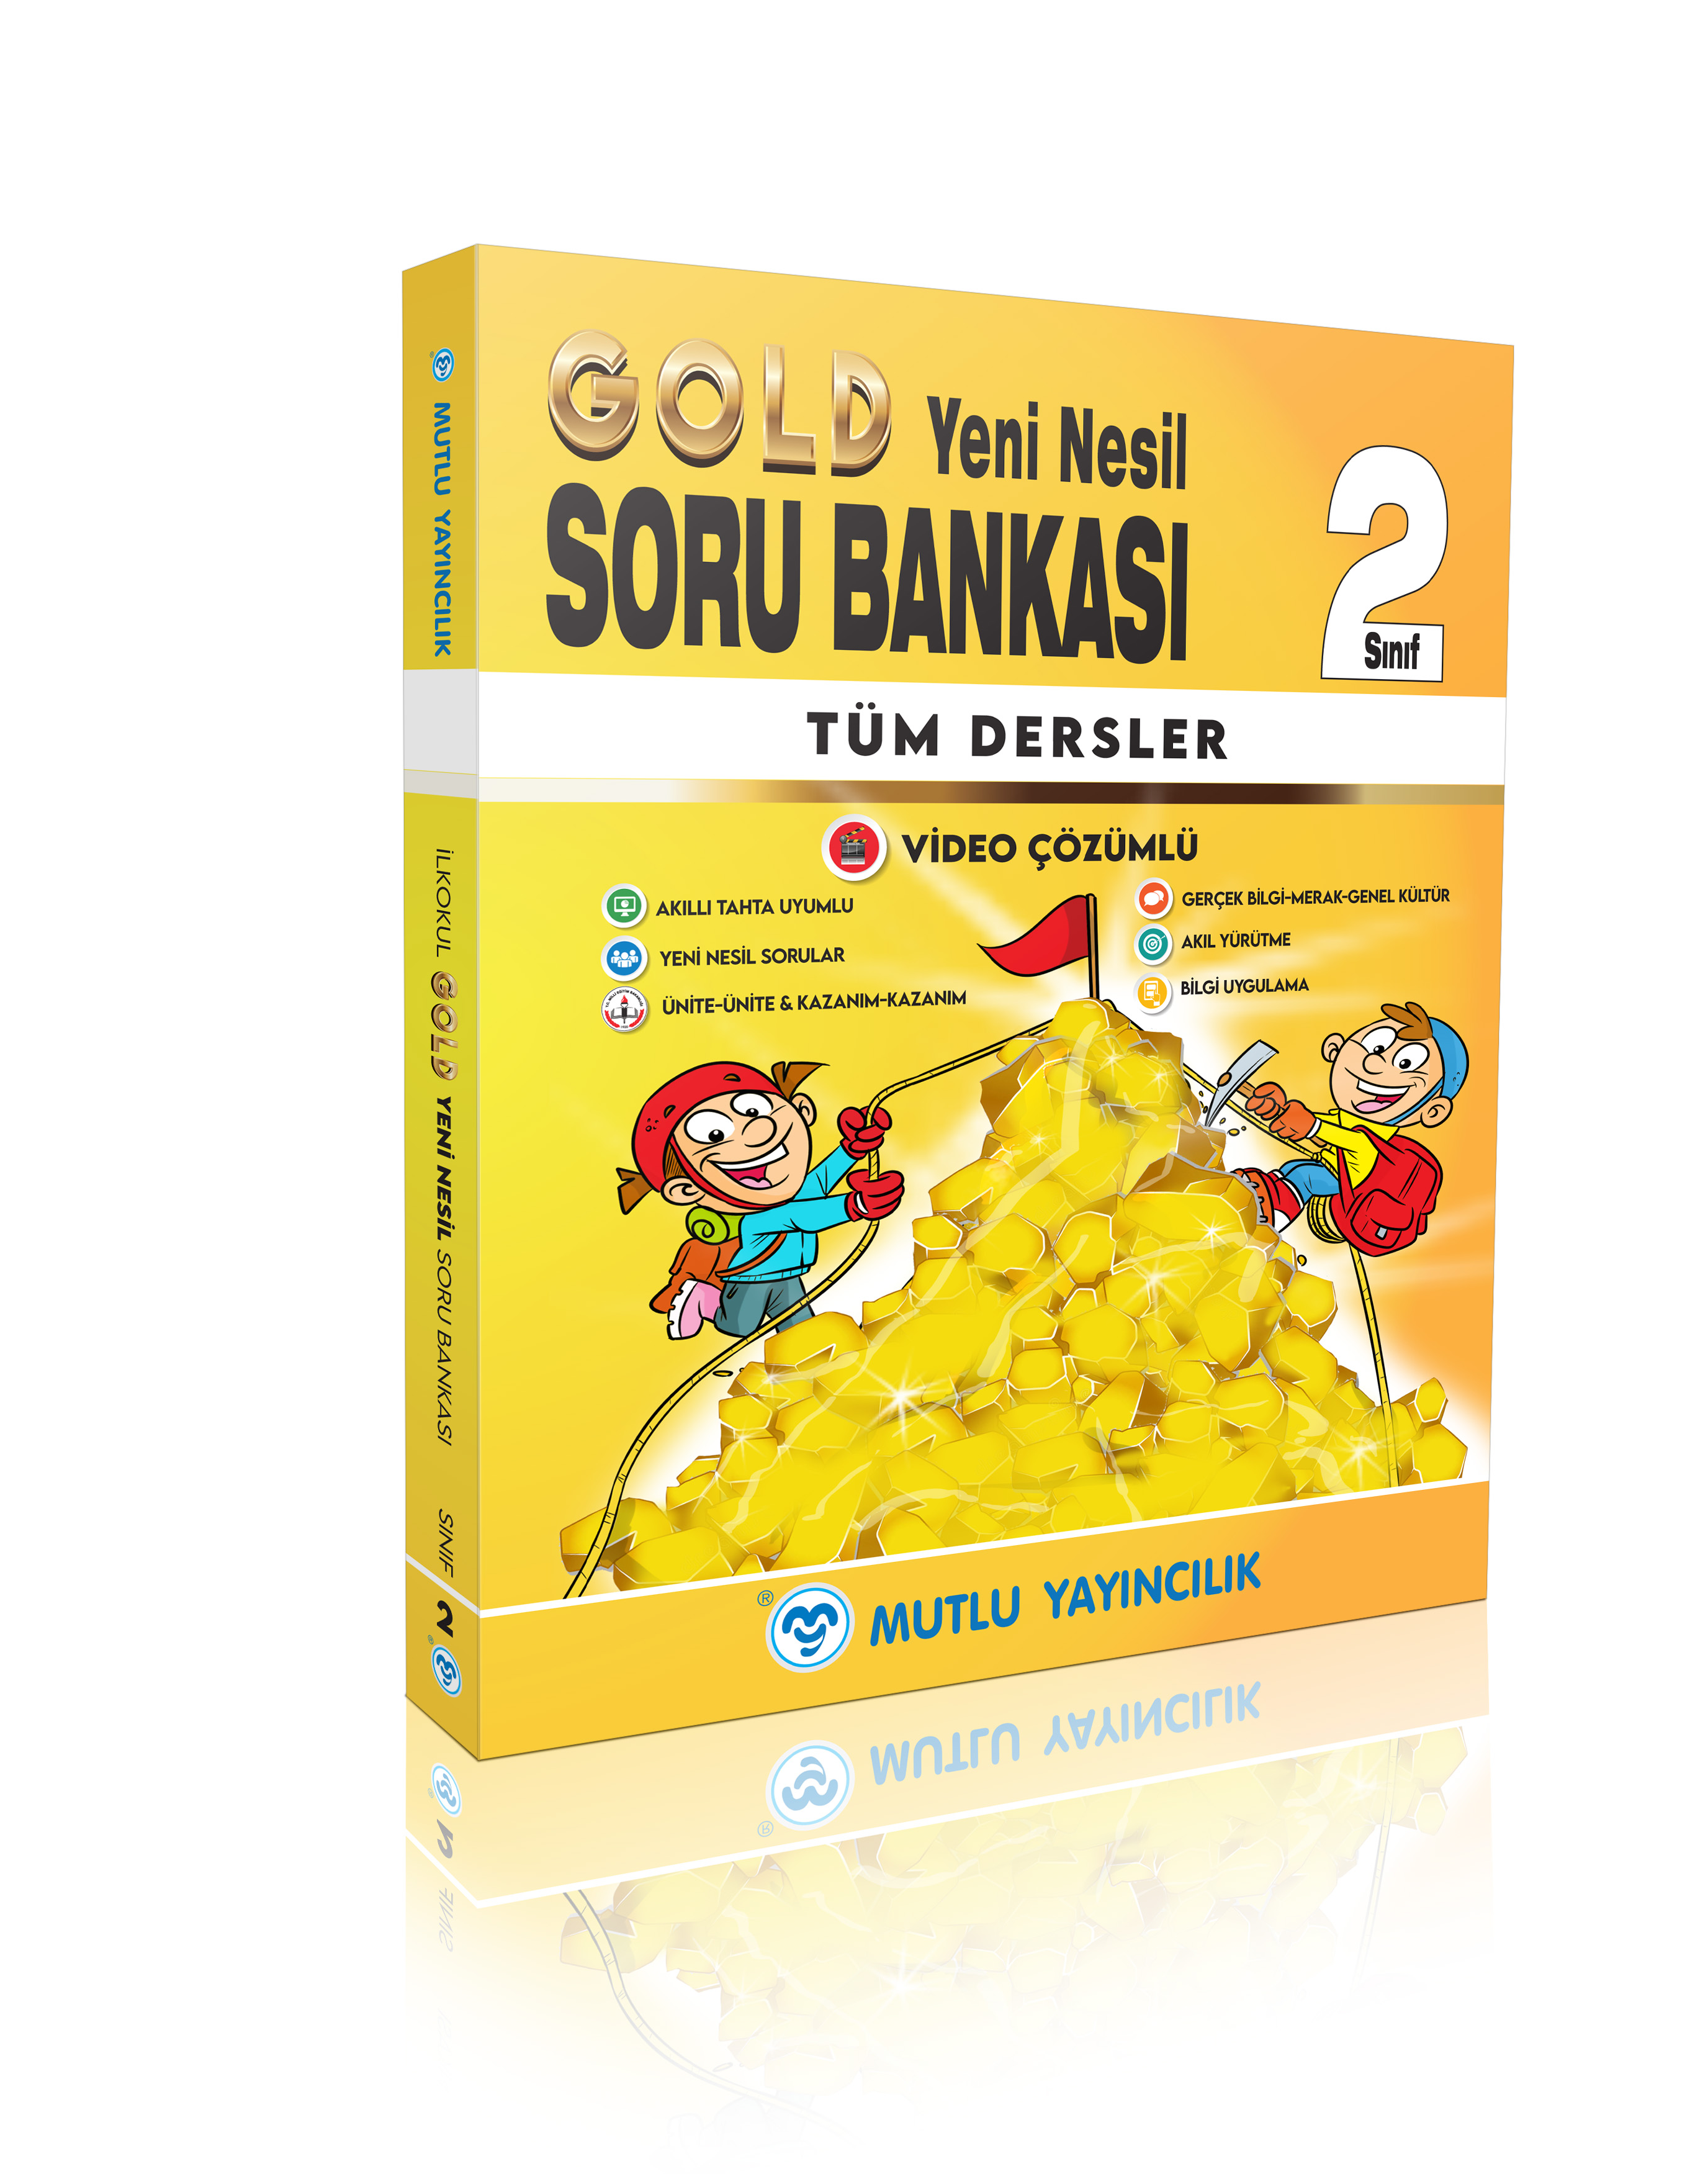 Mutlu Gold Yeni Nesil Soru Bankası 2 Yeni Ürün !!